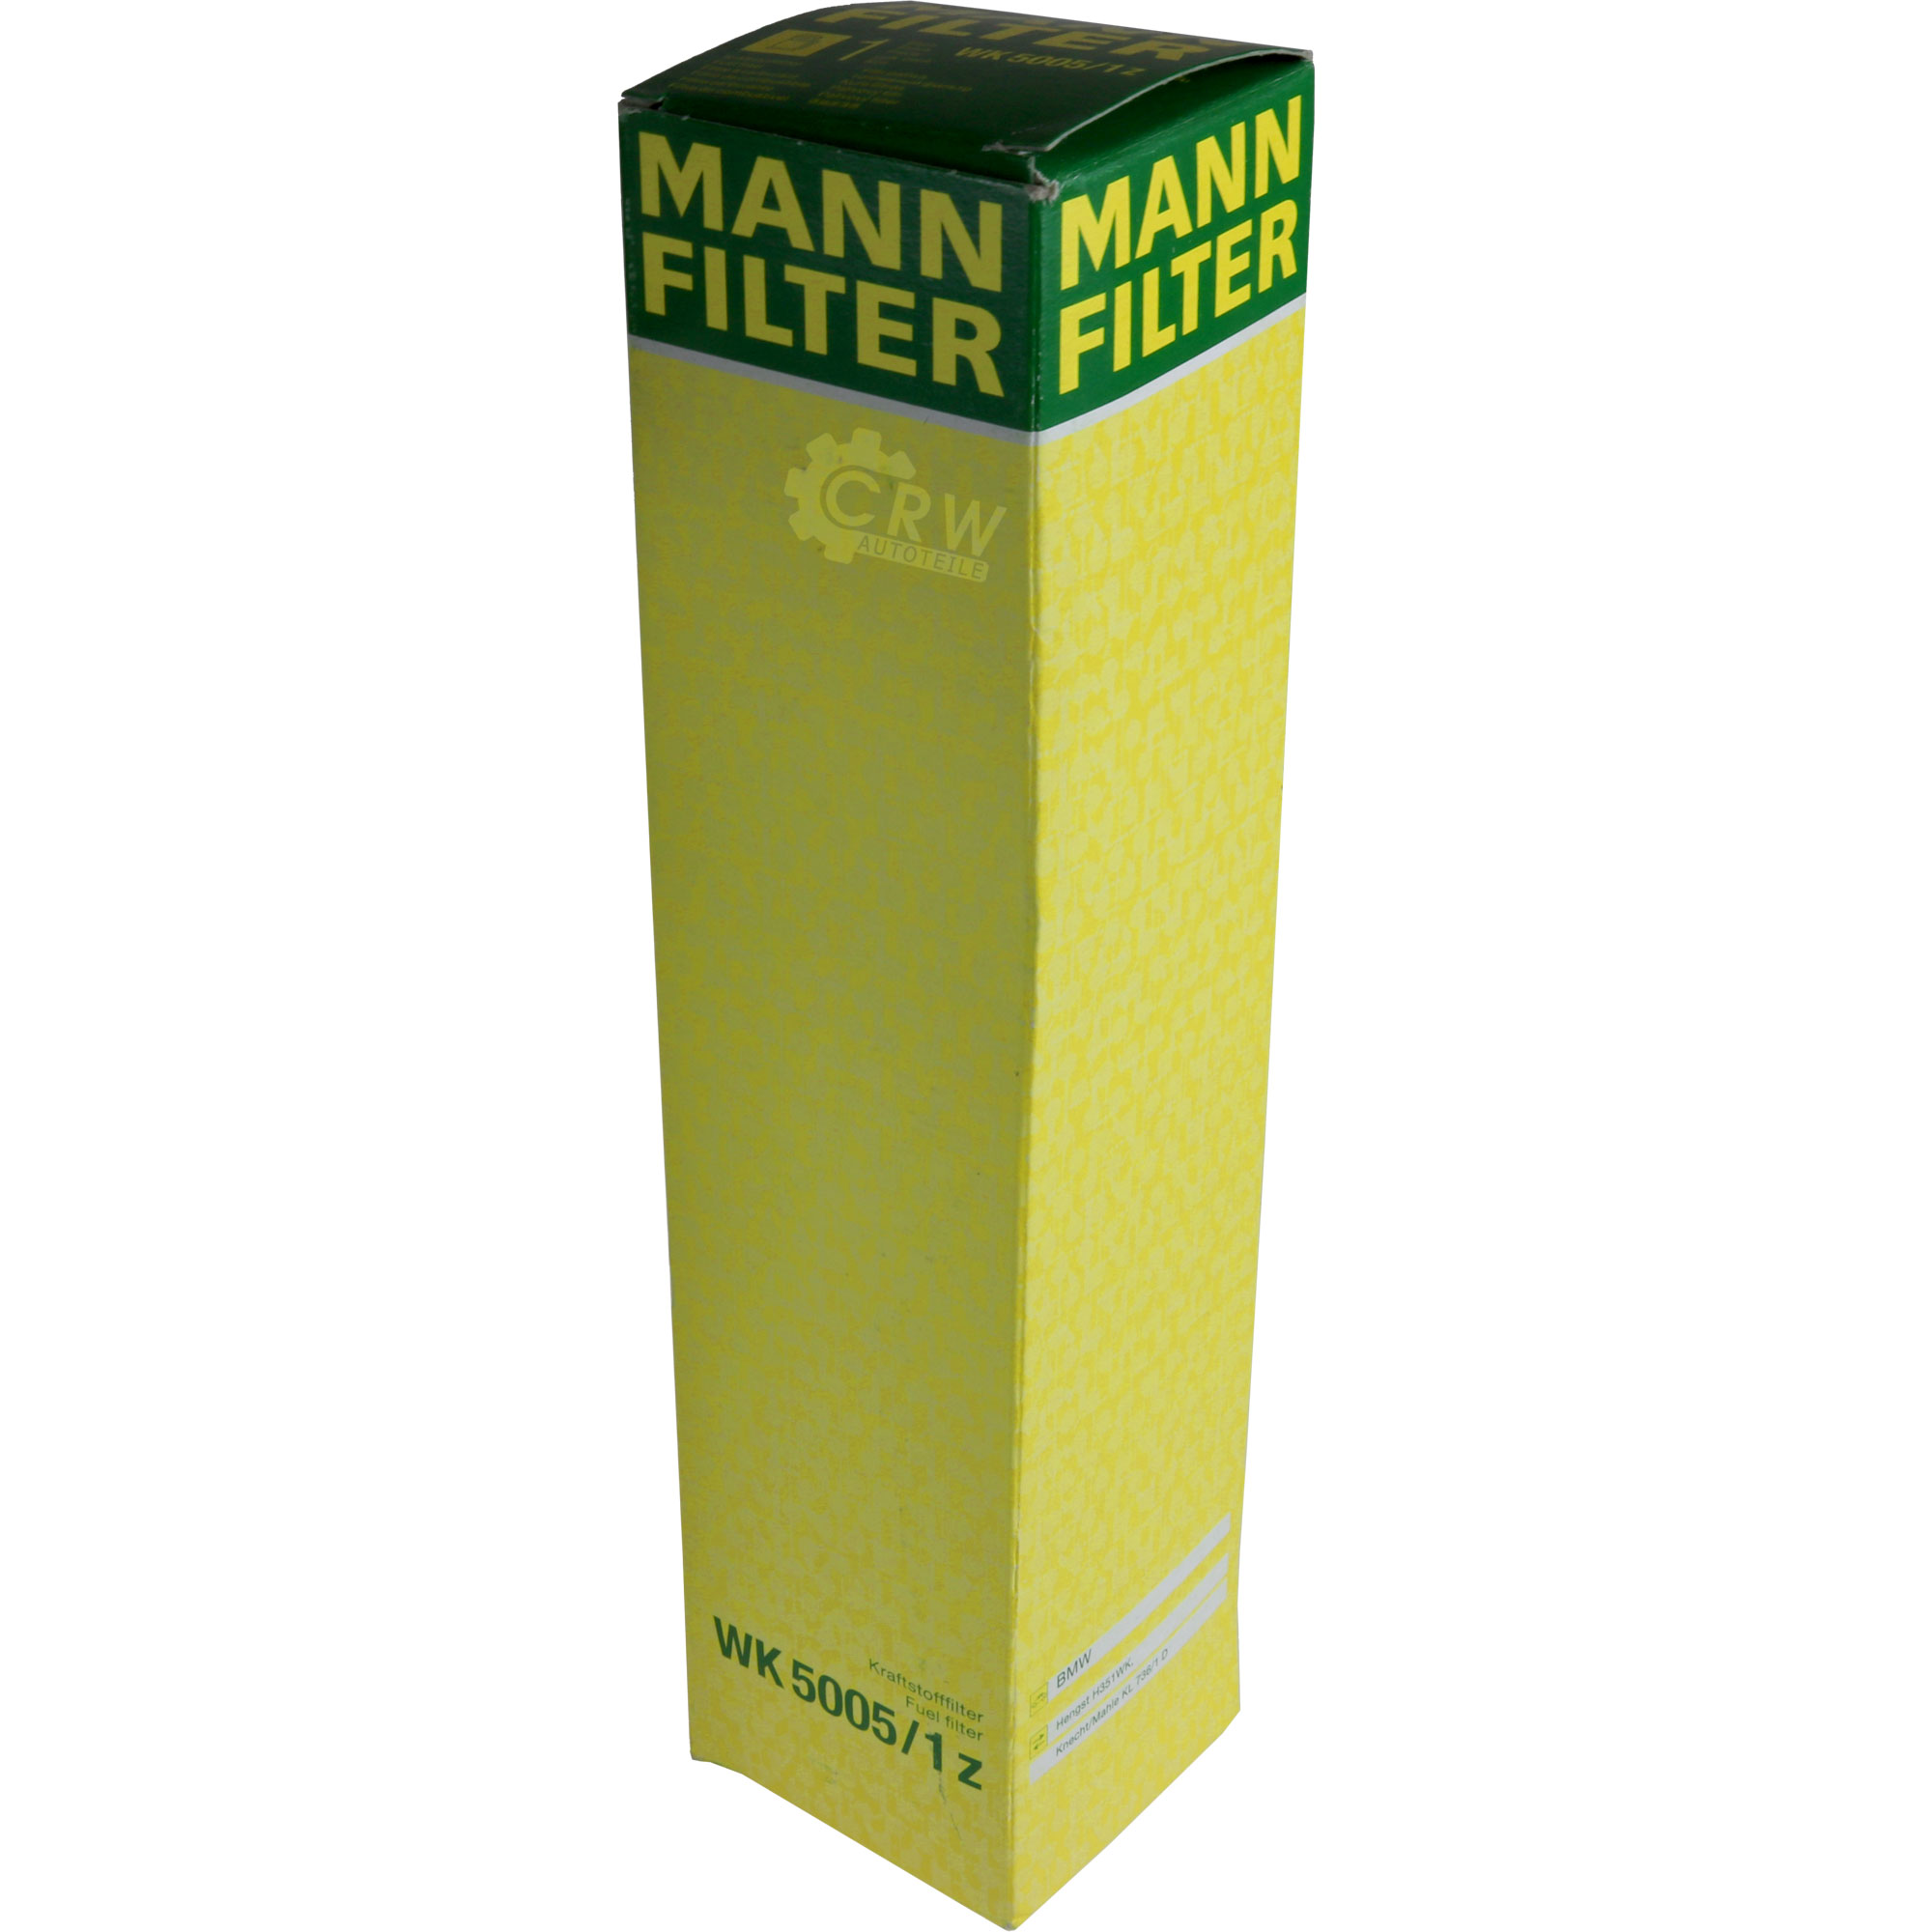 MANN-FILTER Kraftstofffilter WK 5005/1 z Fuel Filter